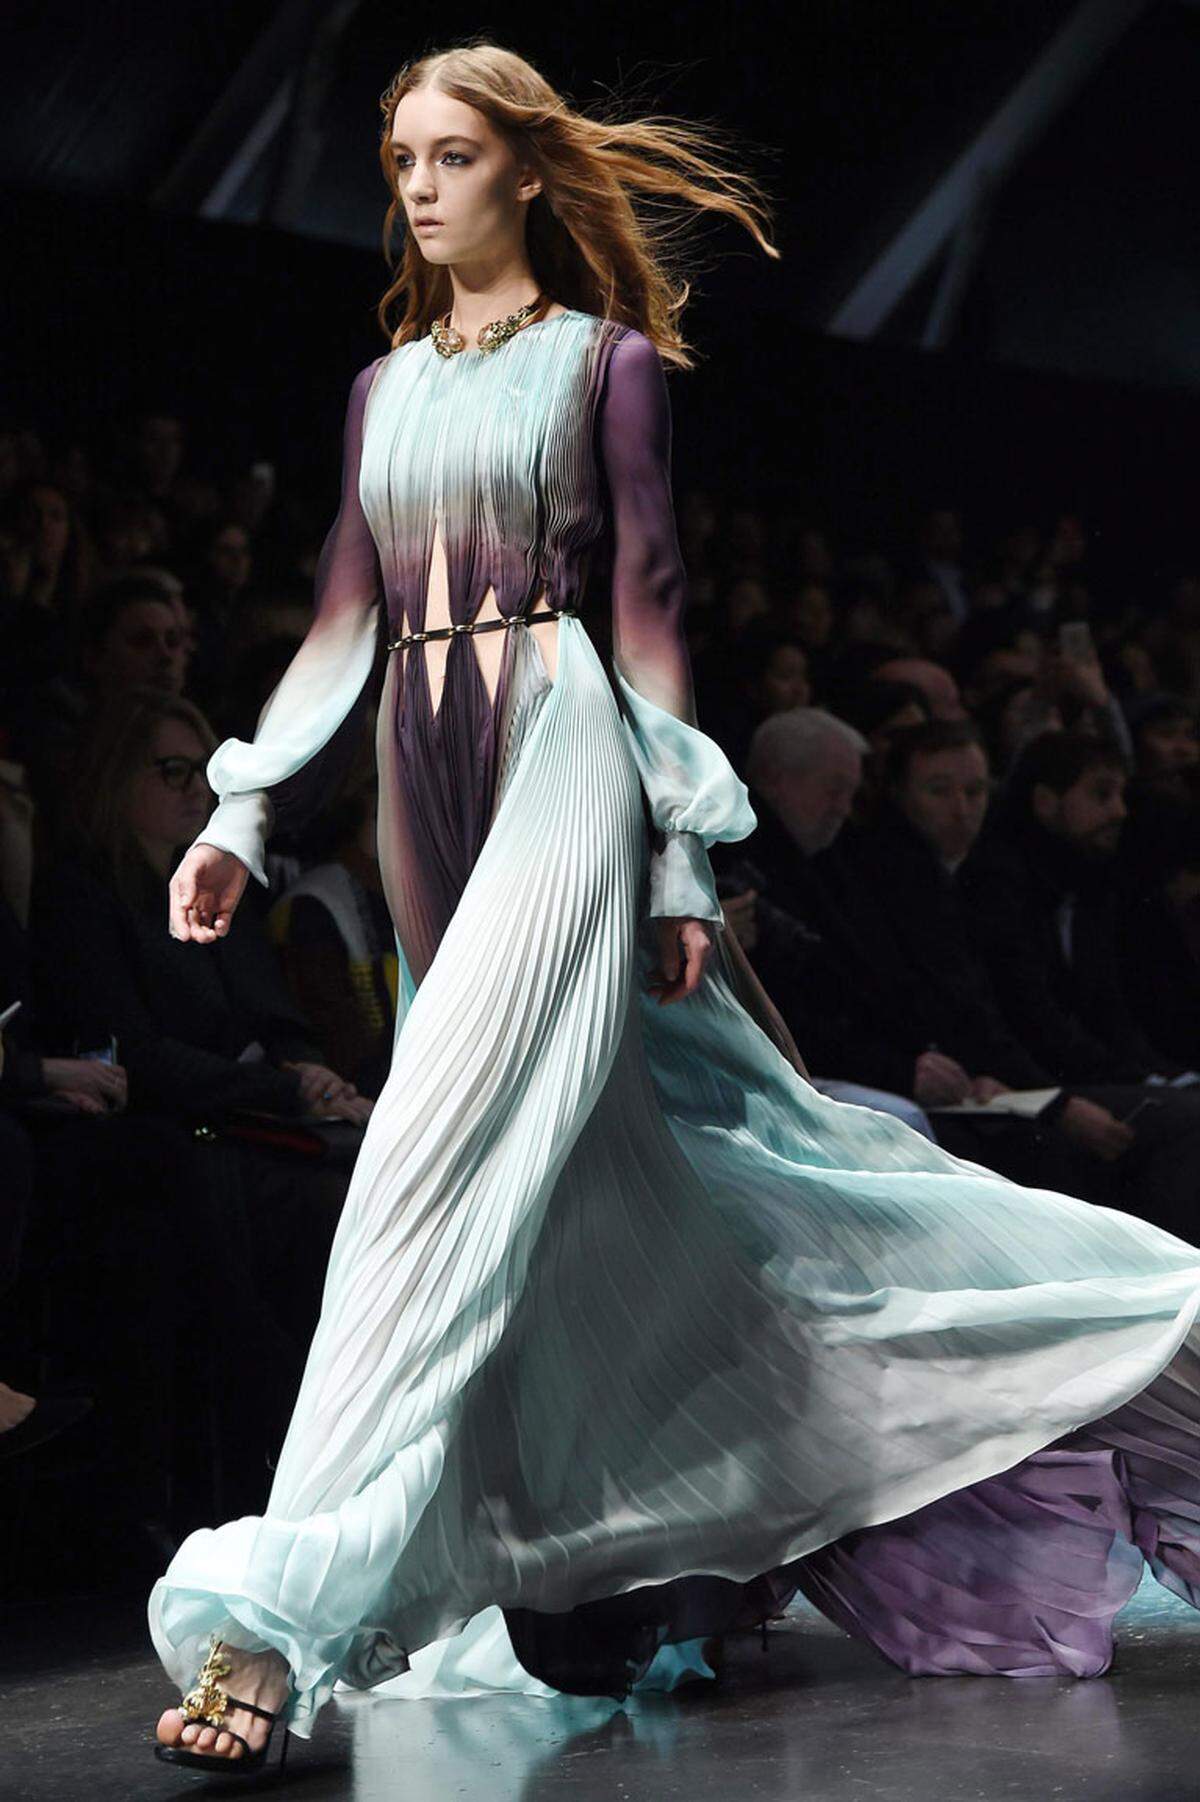 Fließende Kleider mit asiatischen Details wechselten sich auf dem Catwalk des italienischen Modedesigners ...